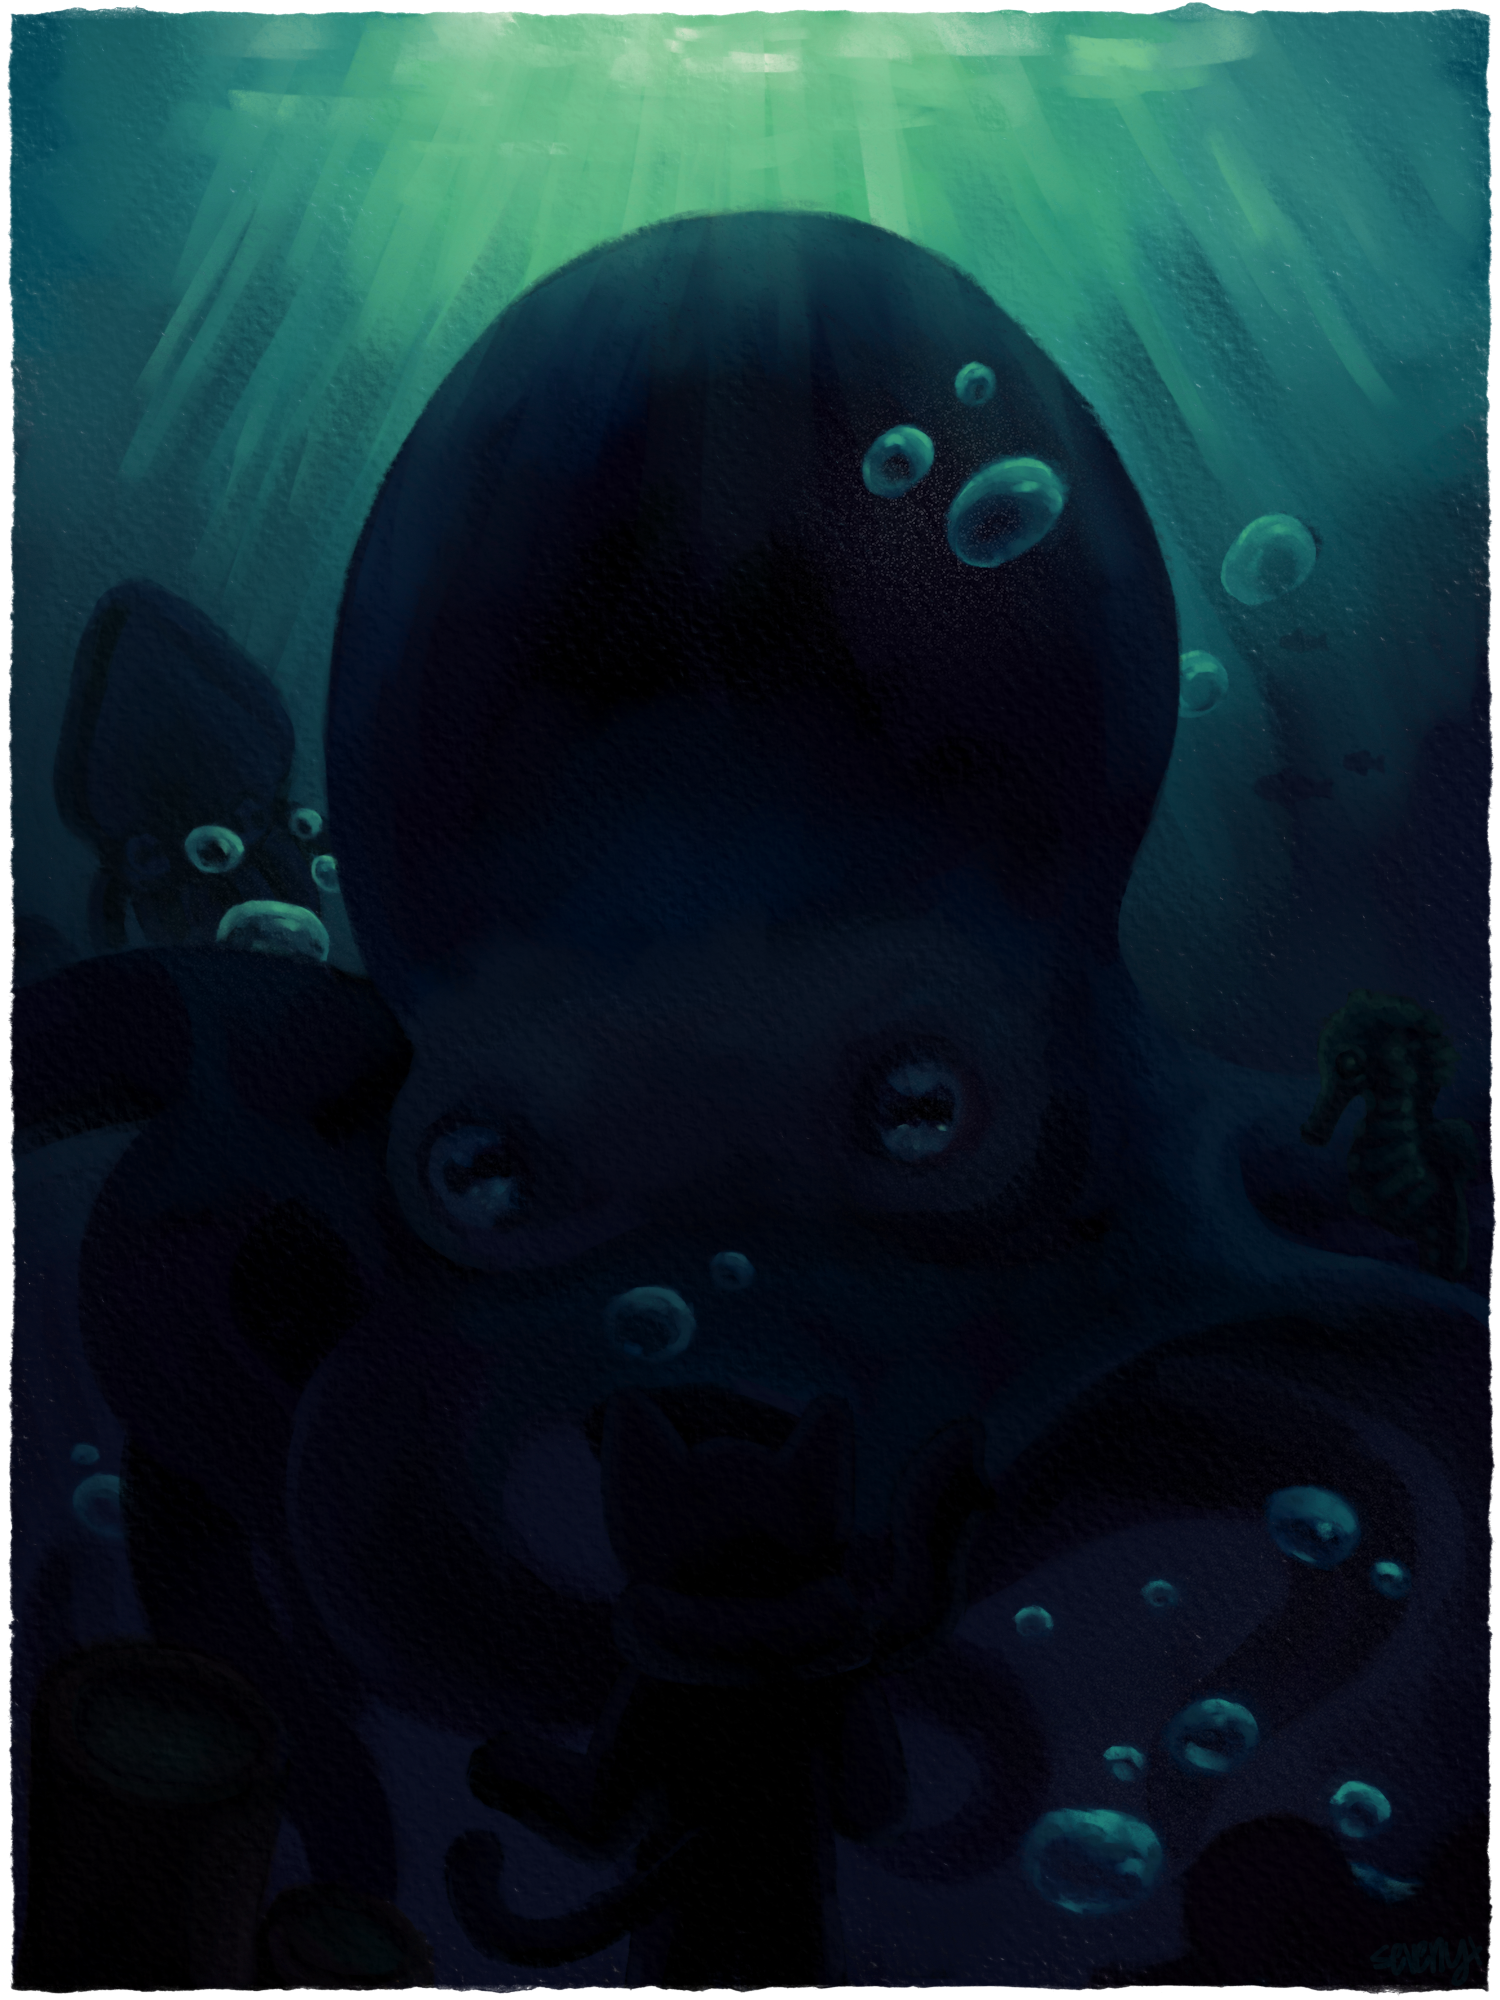 Dark octopus